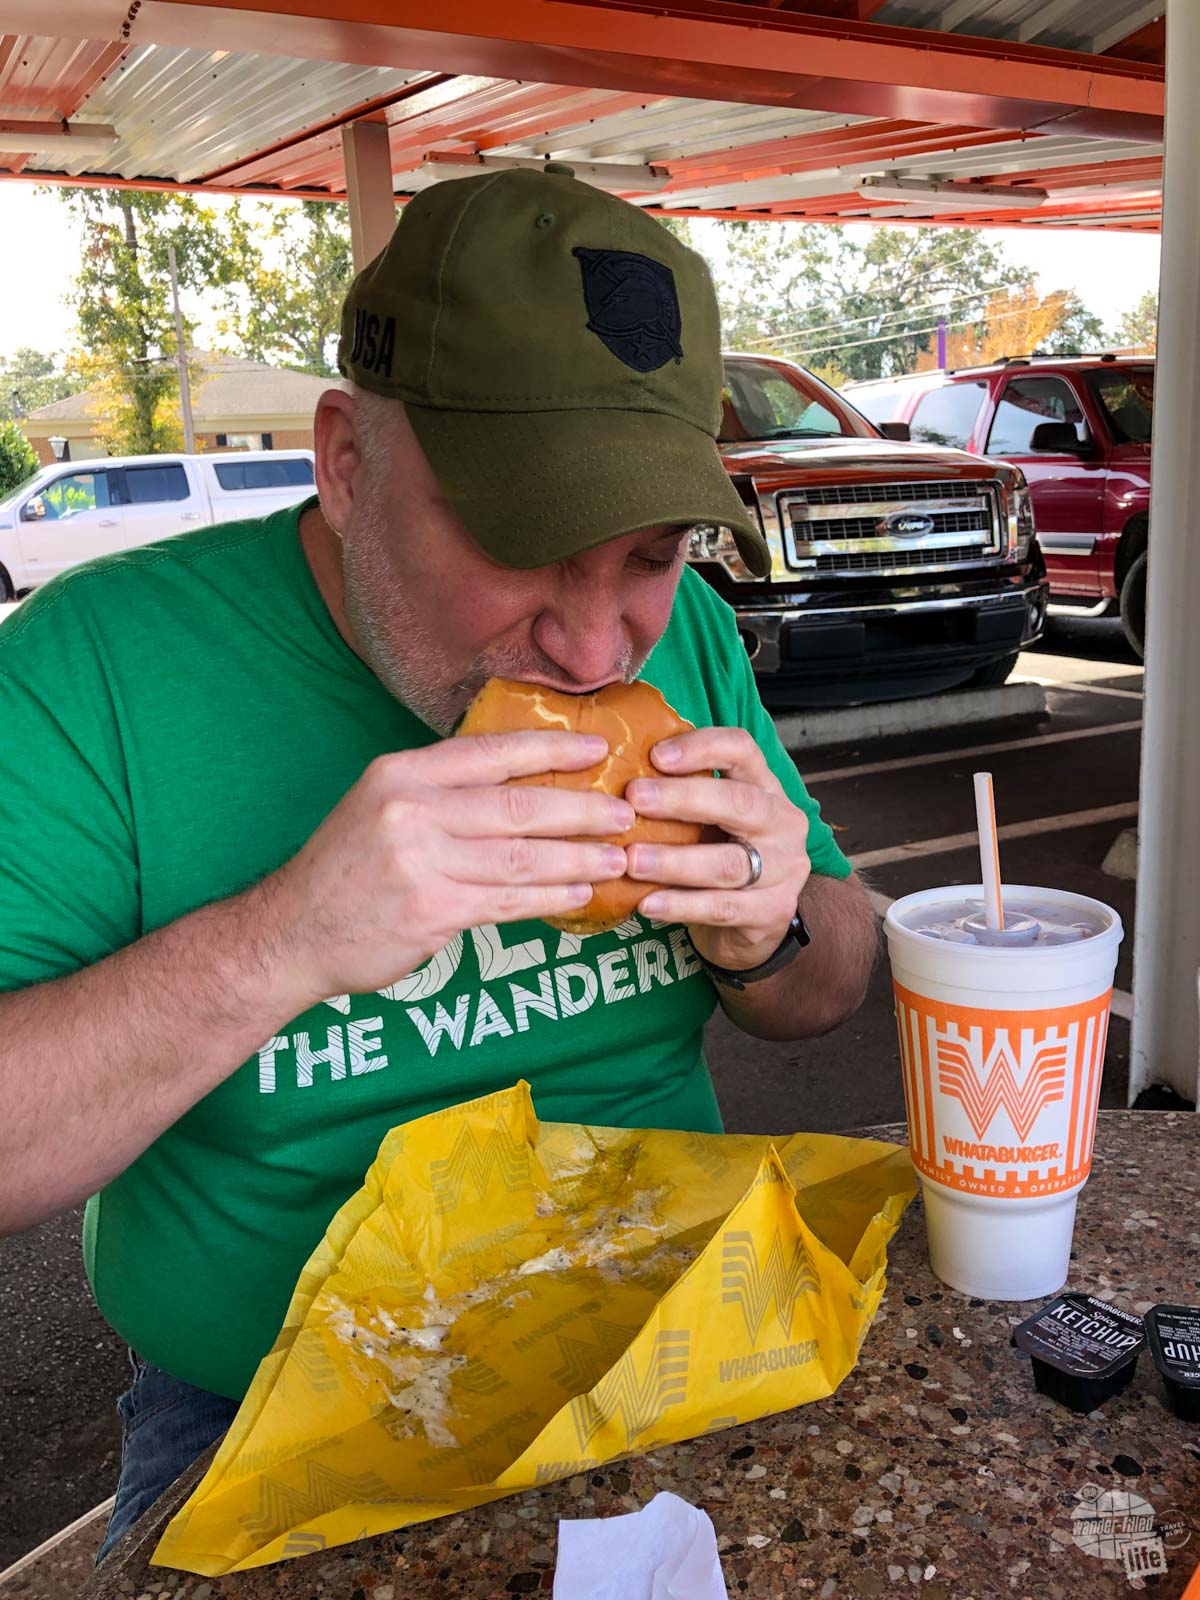 Grant enjoying a burger at Whataburger.